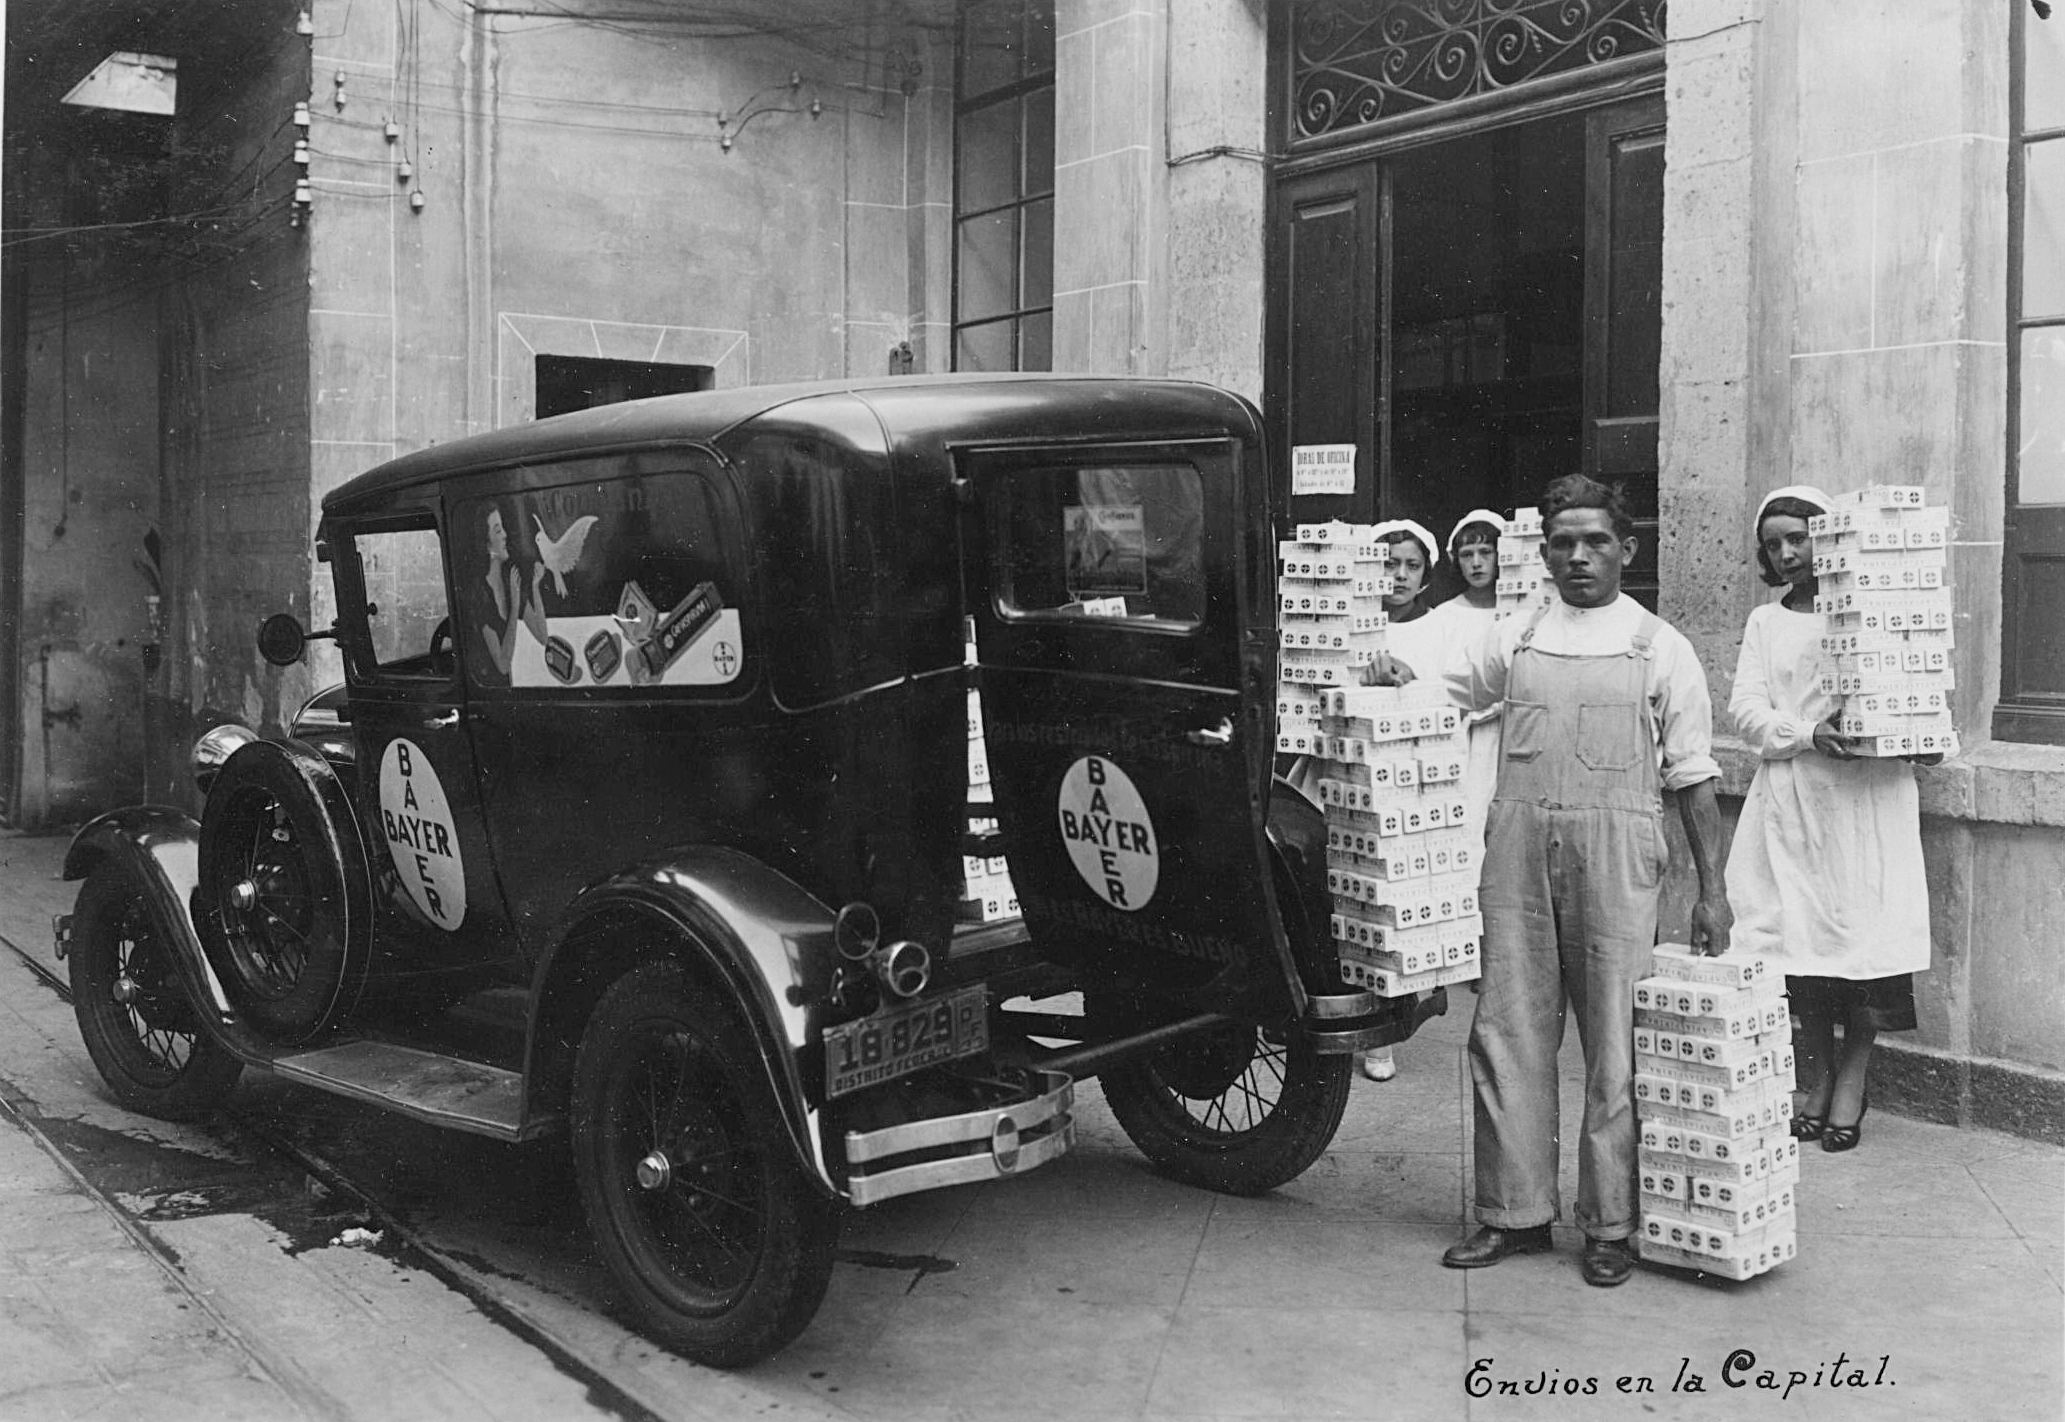 Envíos de Bayer en la Ciudad de México (1933)